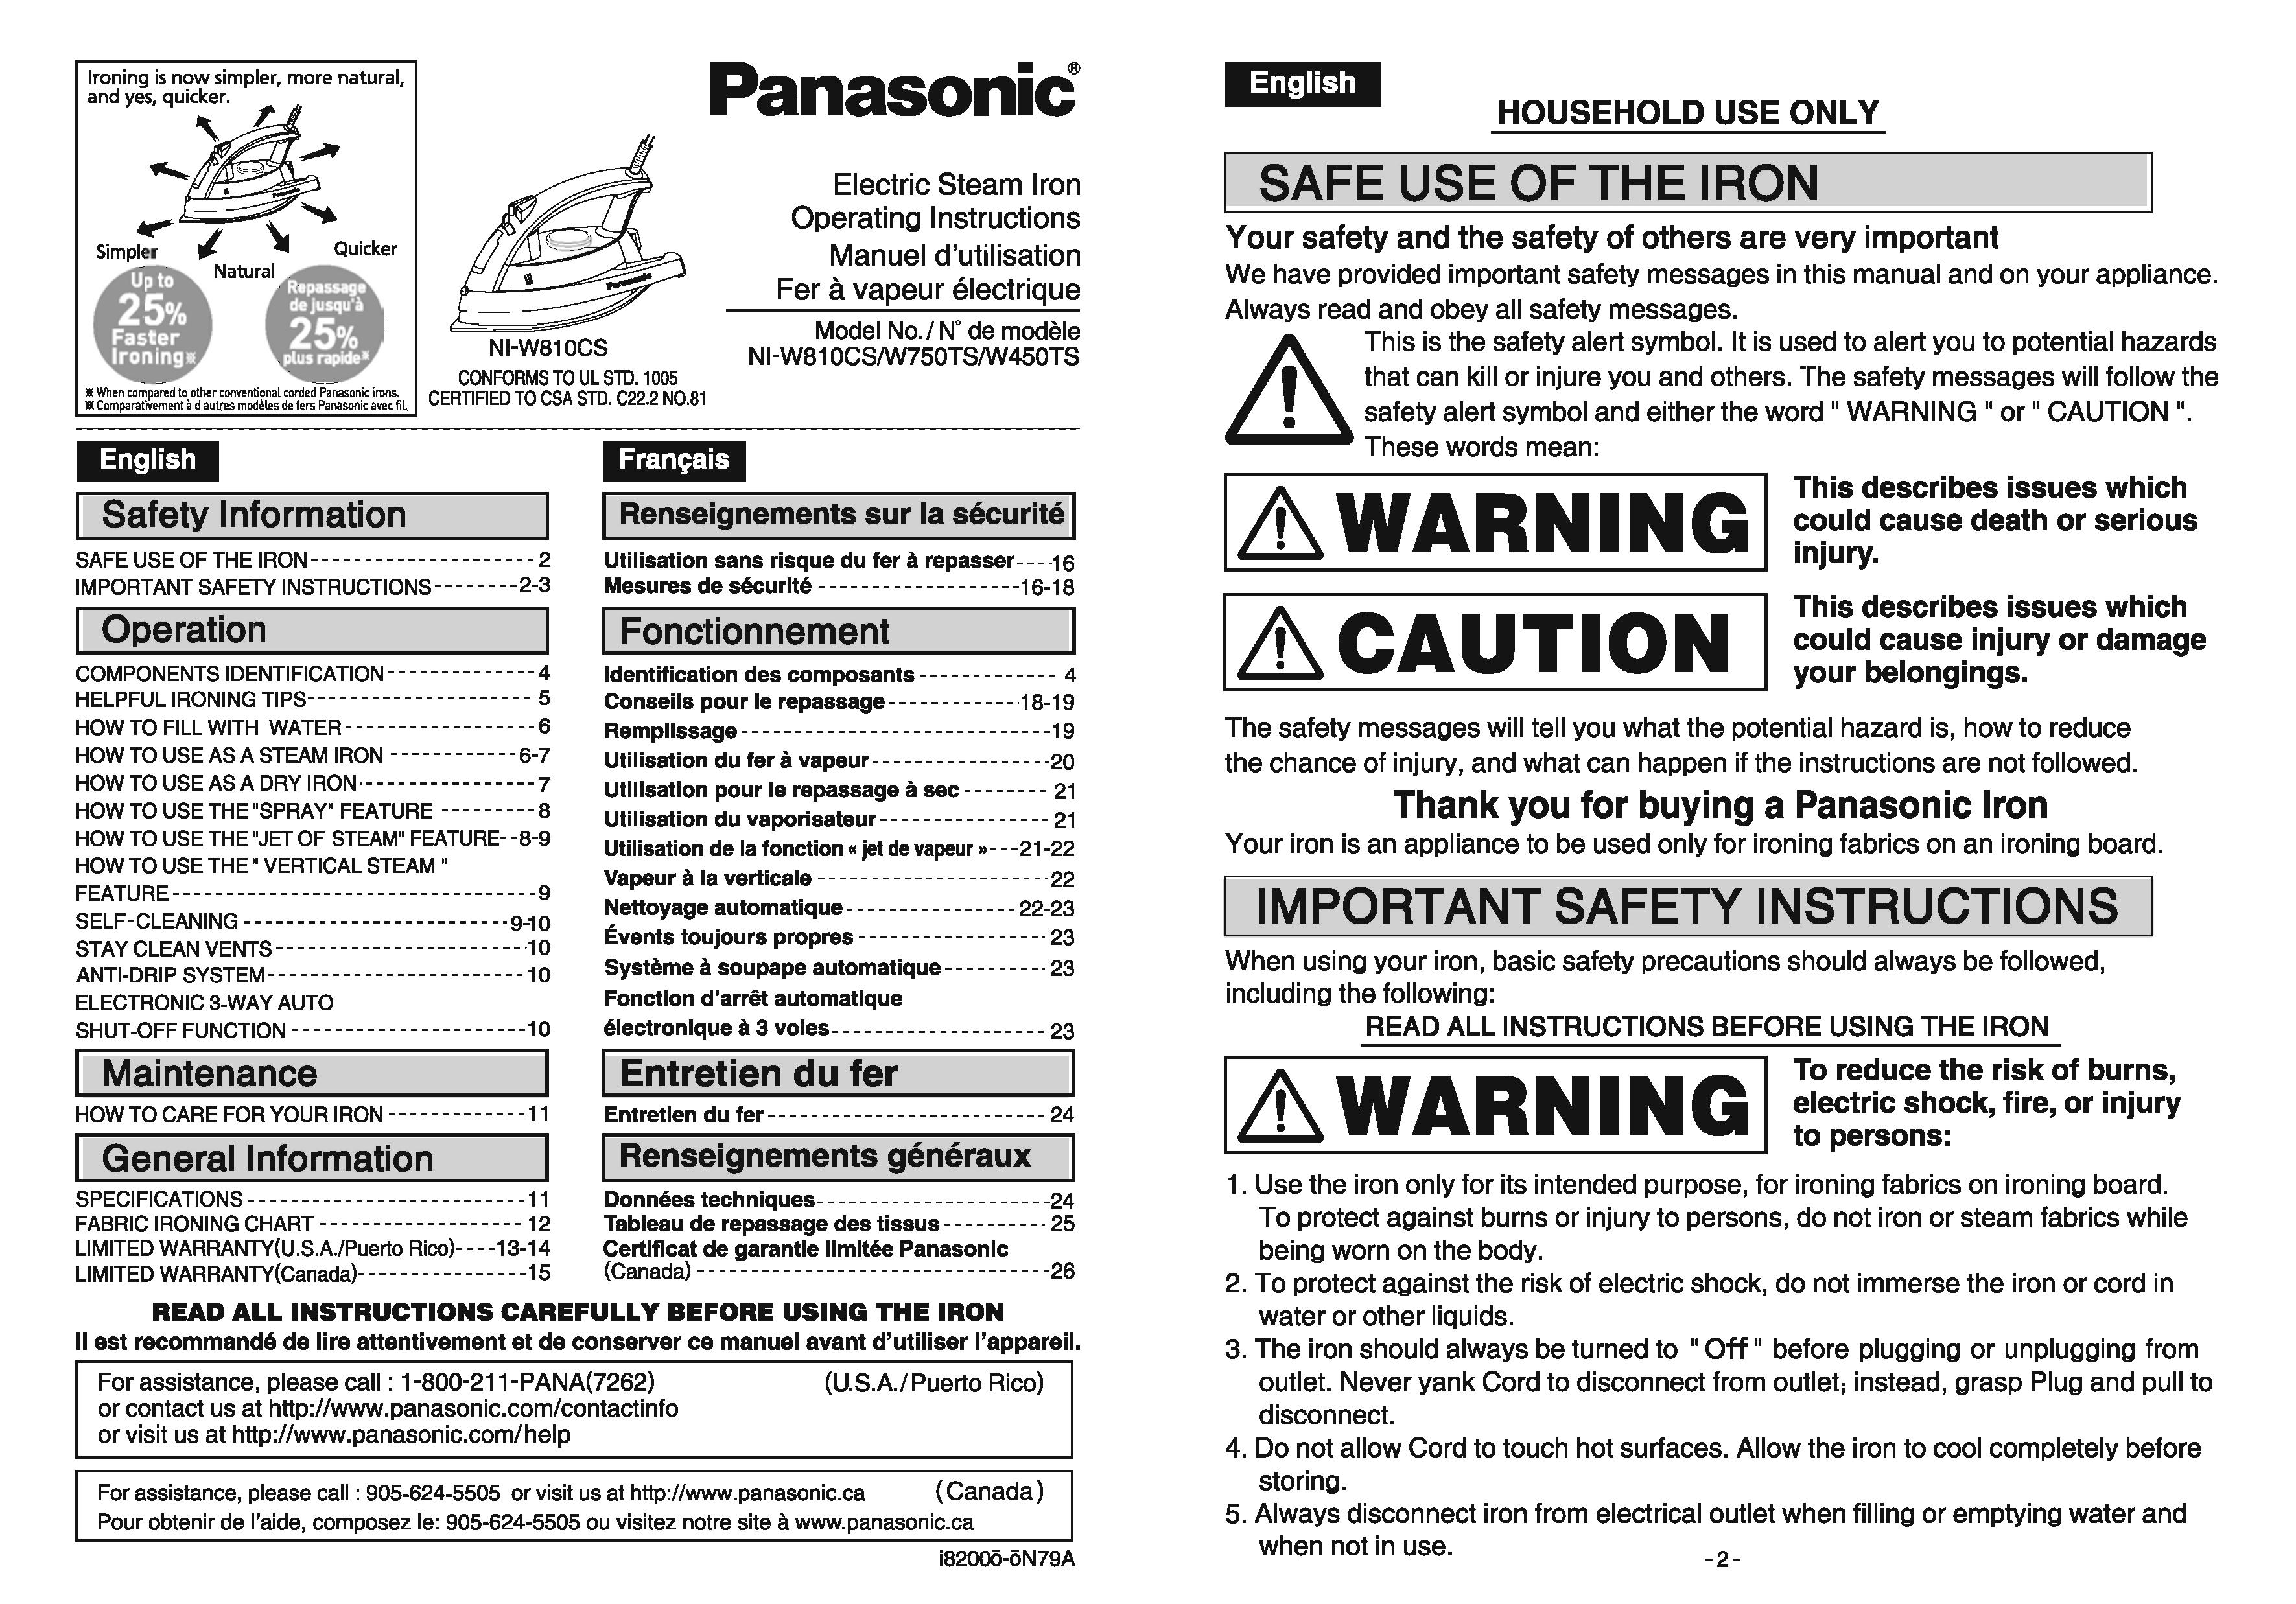 Panasonic NI-W750TS Iron User Manual